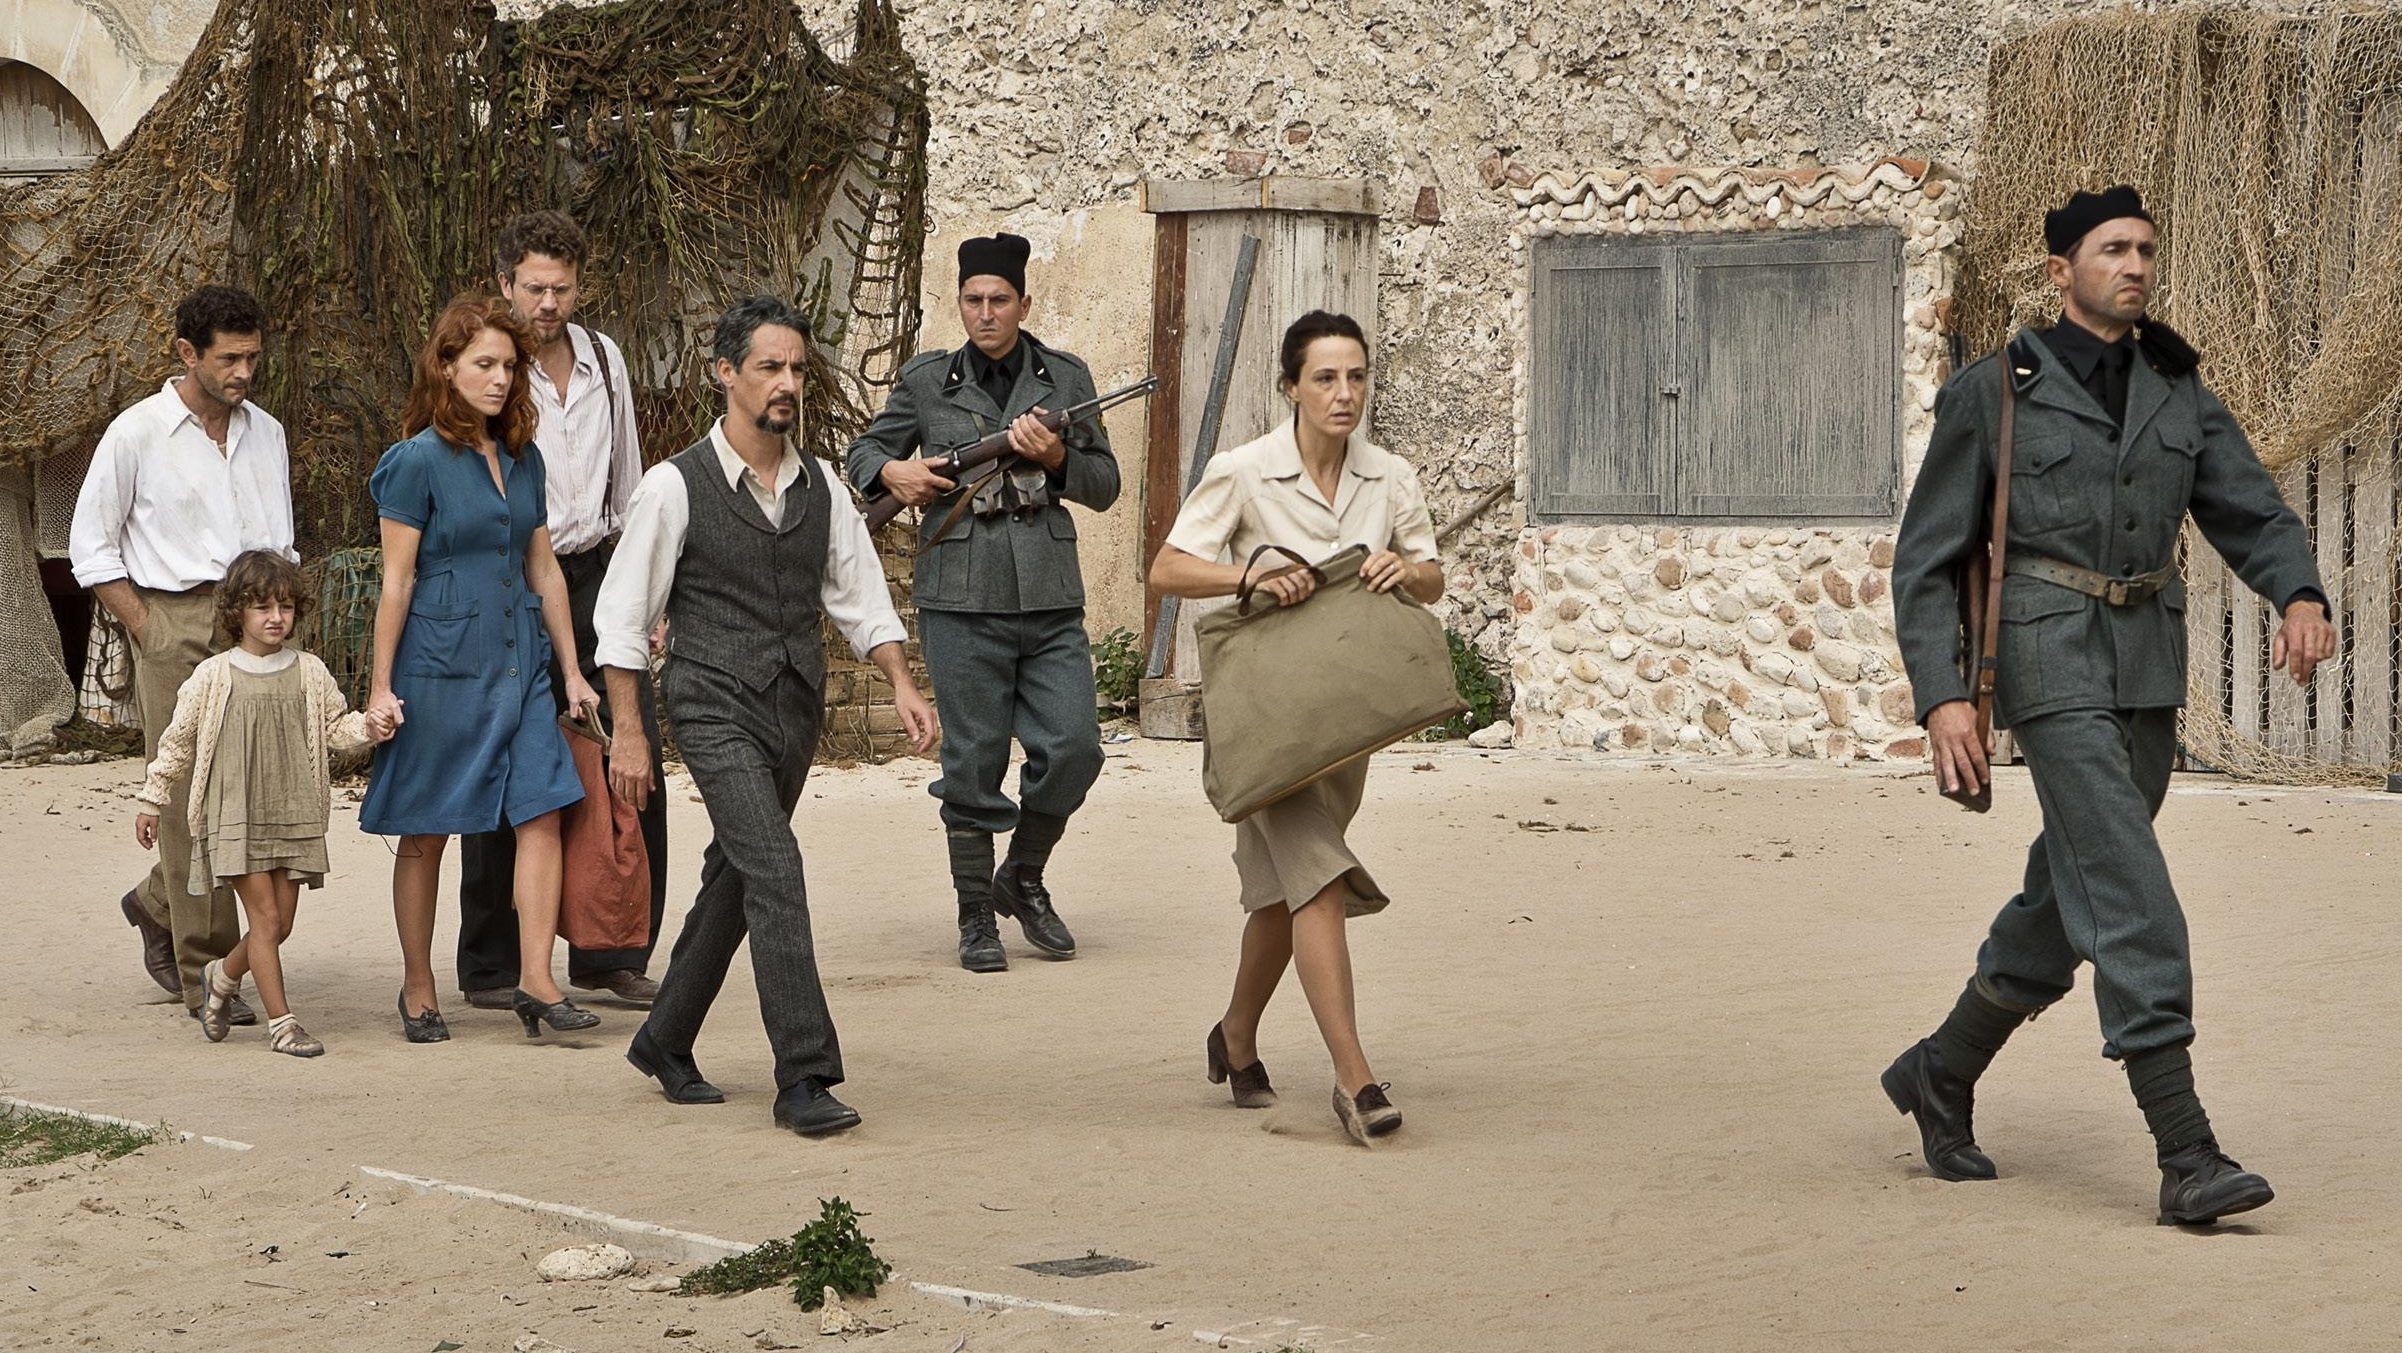 L'arrivo dei confinati sull'Isola di Ventotene in una scena del film.